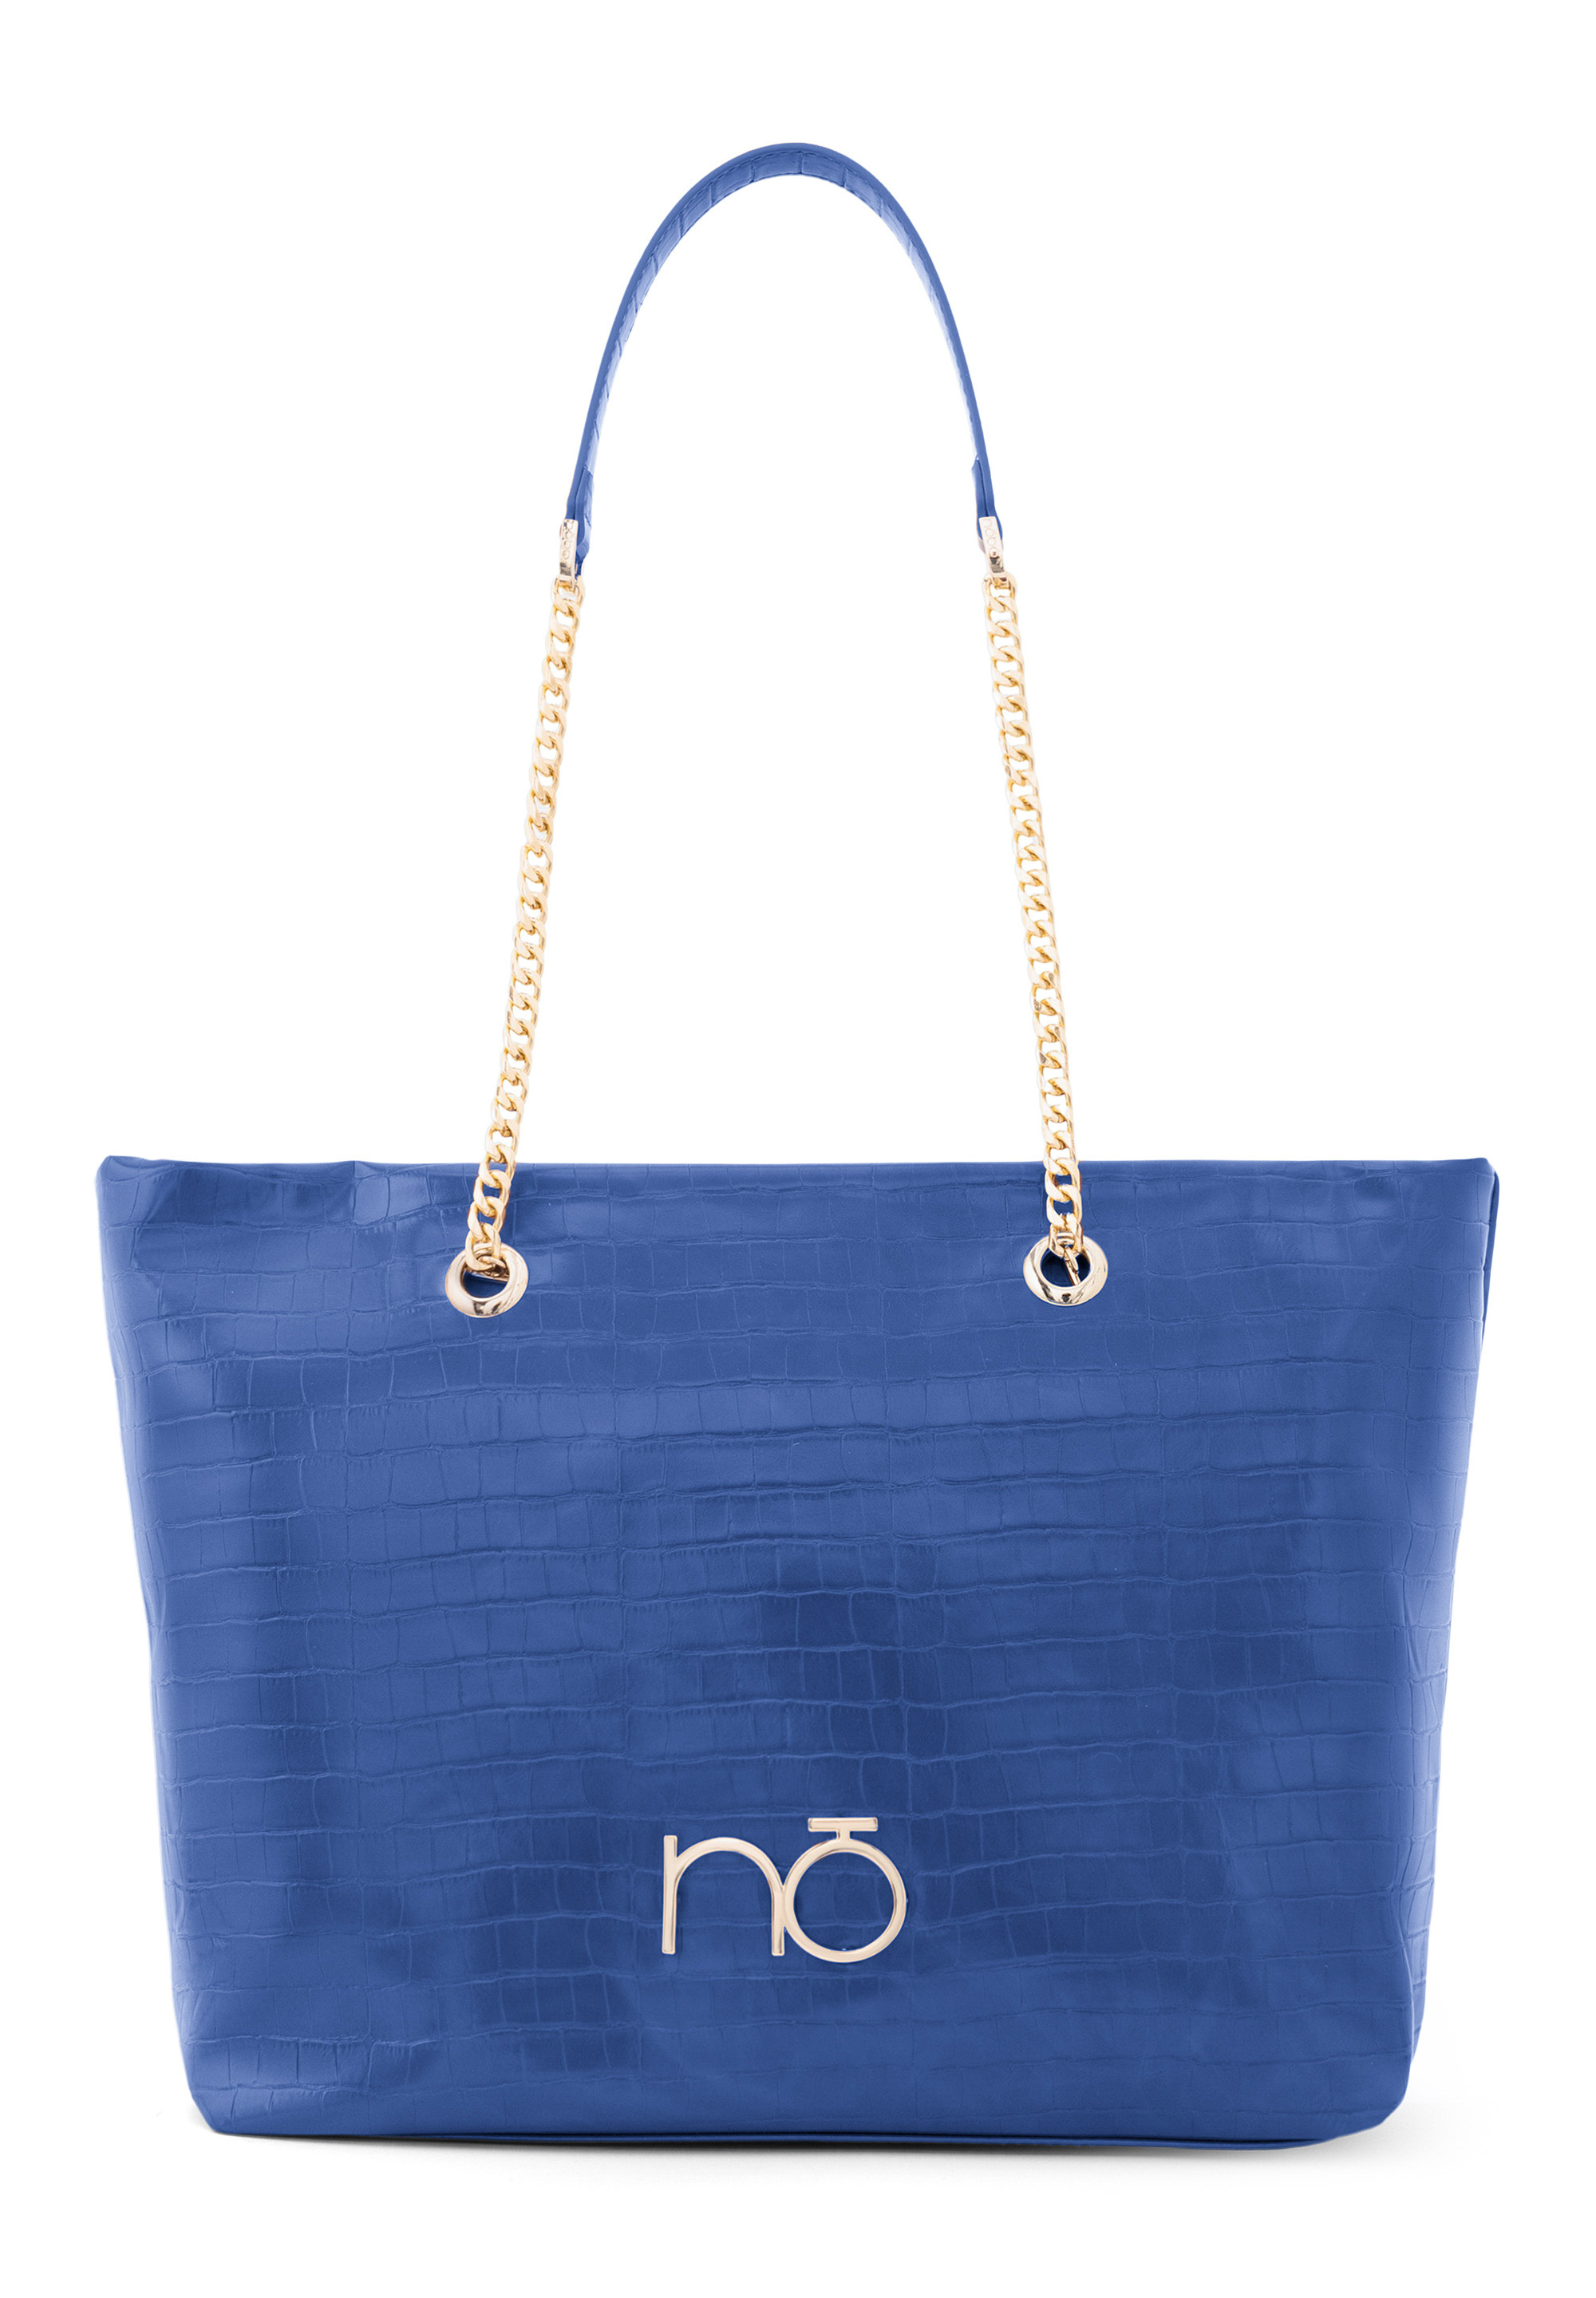 Сумка шоппер Nobo Bags Dream, синий сумка шоппер nobo bags radiate цвет dark blue